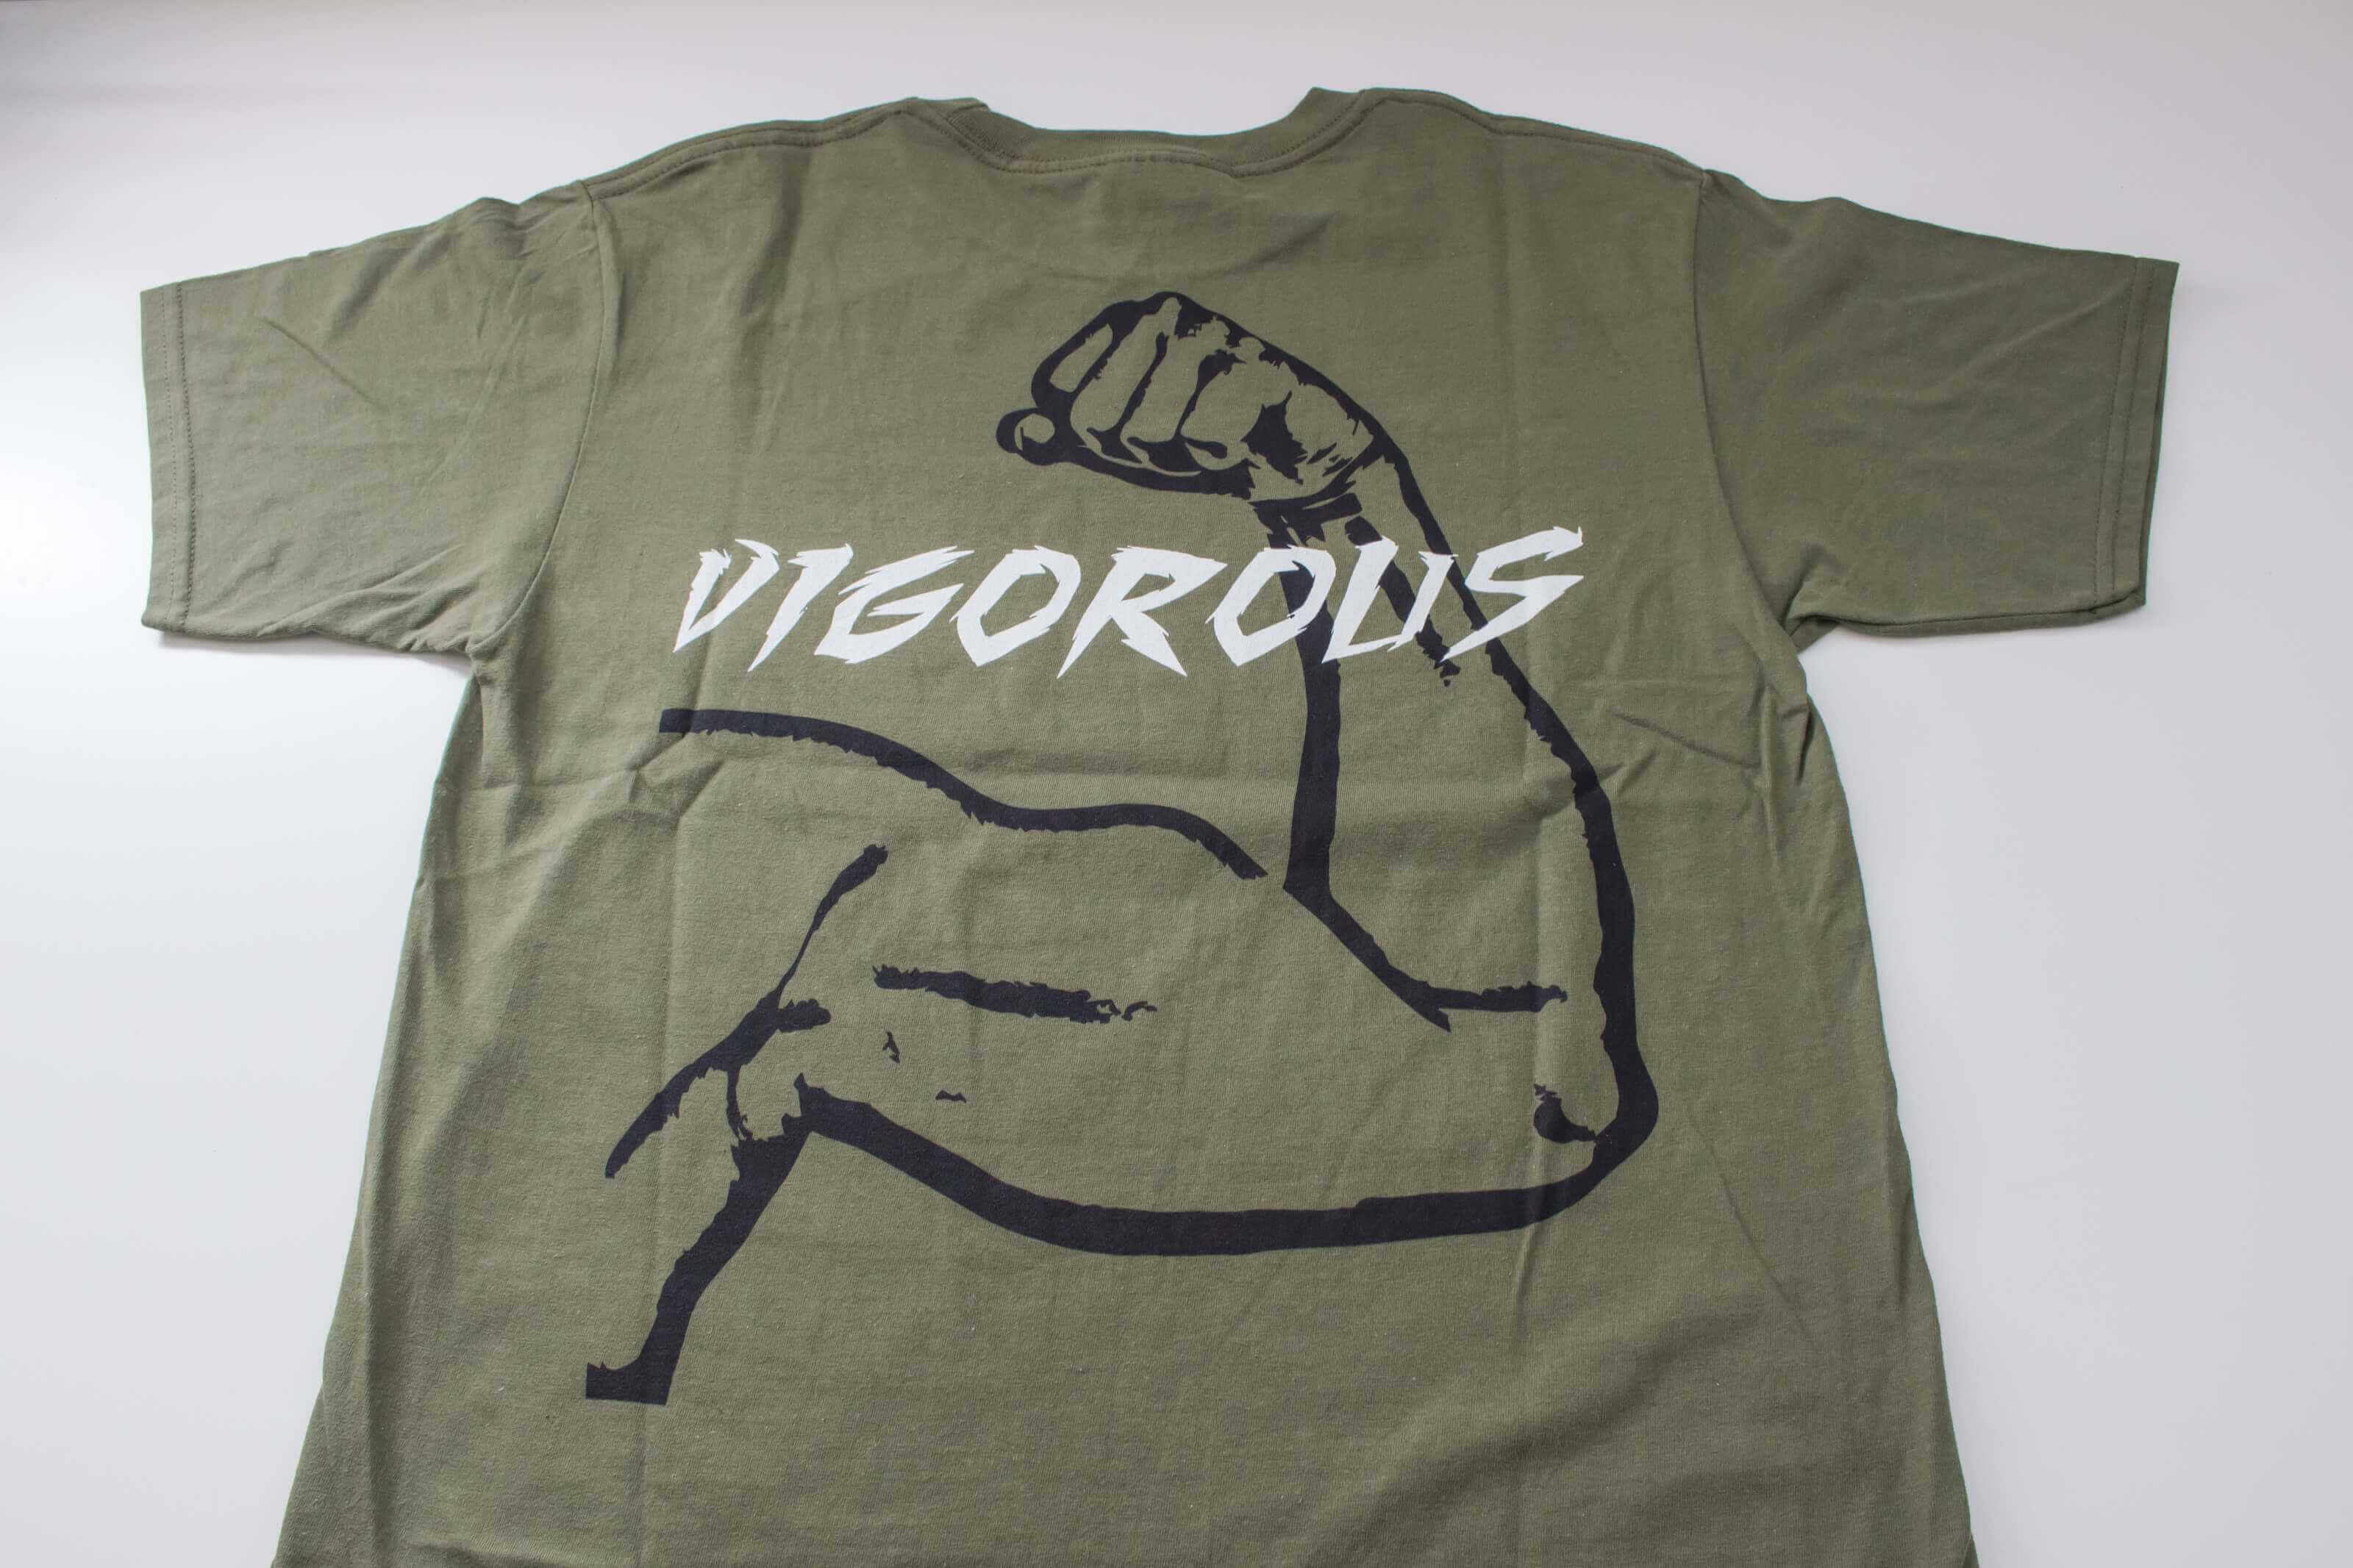  客製化T恤- VIGOROUS 客製T恤的第3張圖(客製化公司制服、班服製作、團體服製作等示意或作品圖)